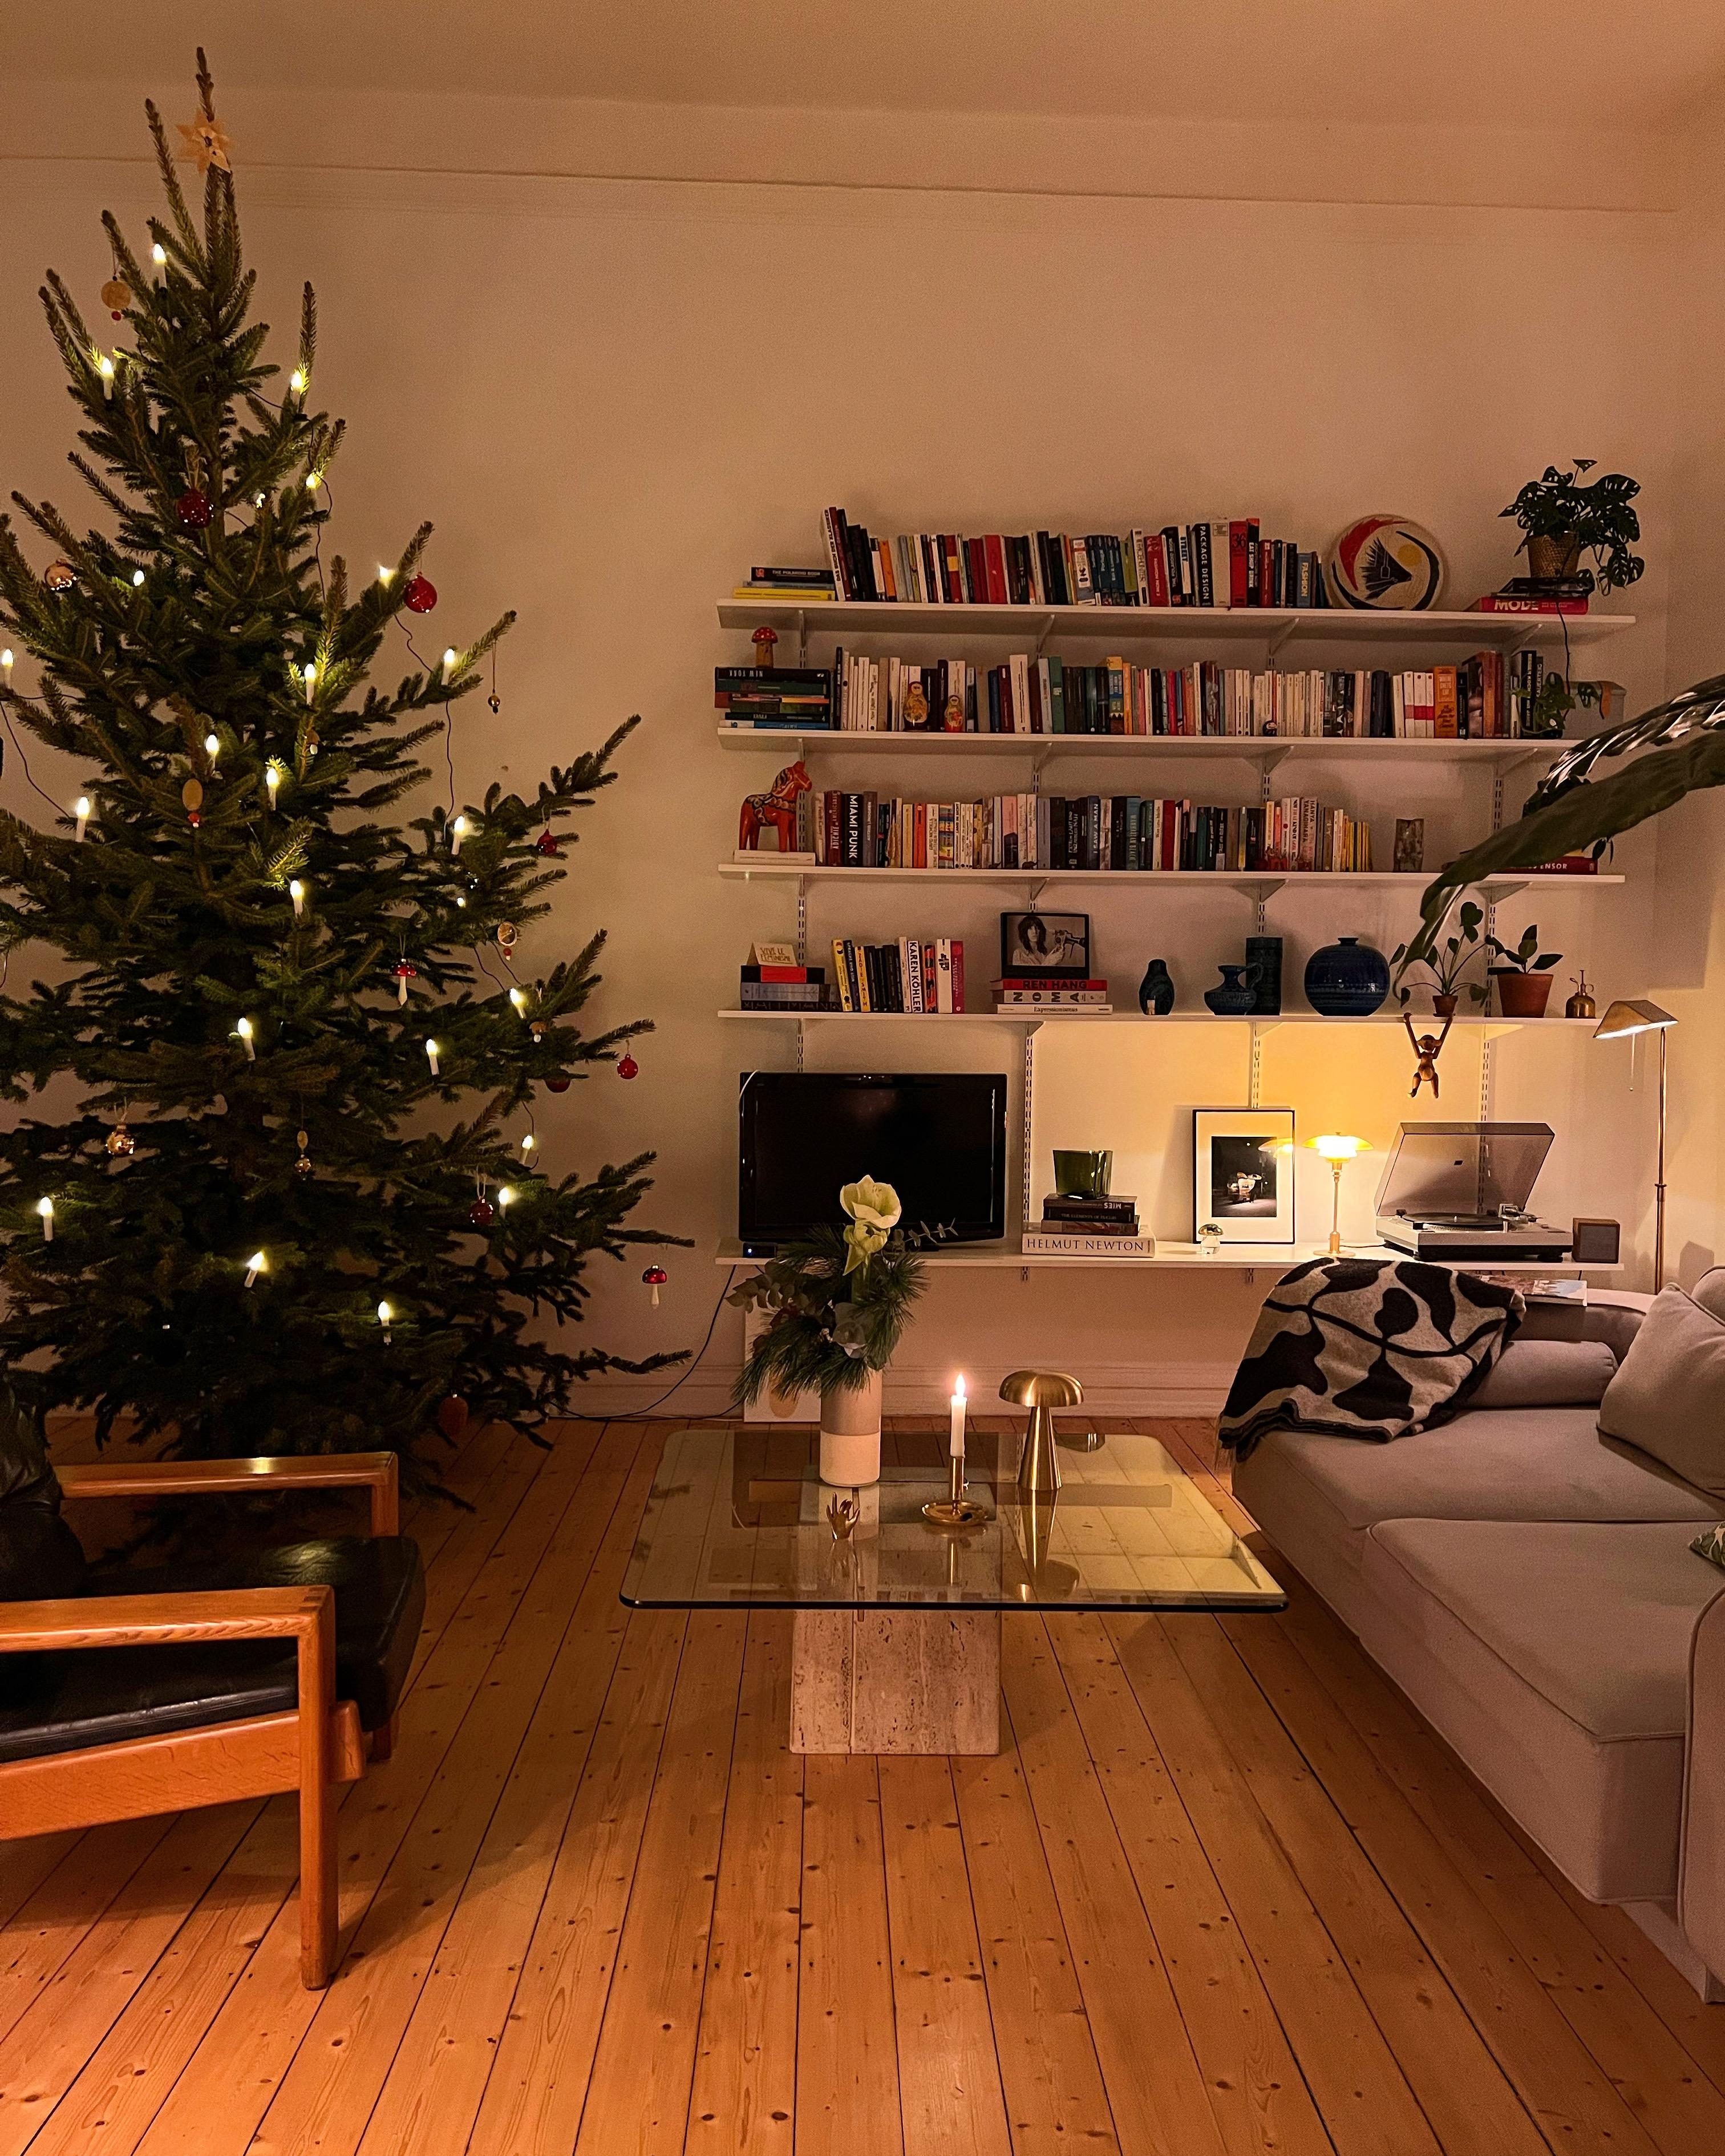 Christmas mood on 🎄#weihnachten#weihnachtsbaum#gemütlich#interior#cozy#wohnzimmer#altbau#altbauliebe#skandinavischwohnen